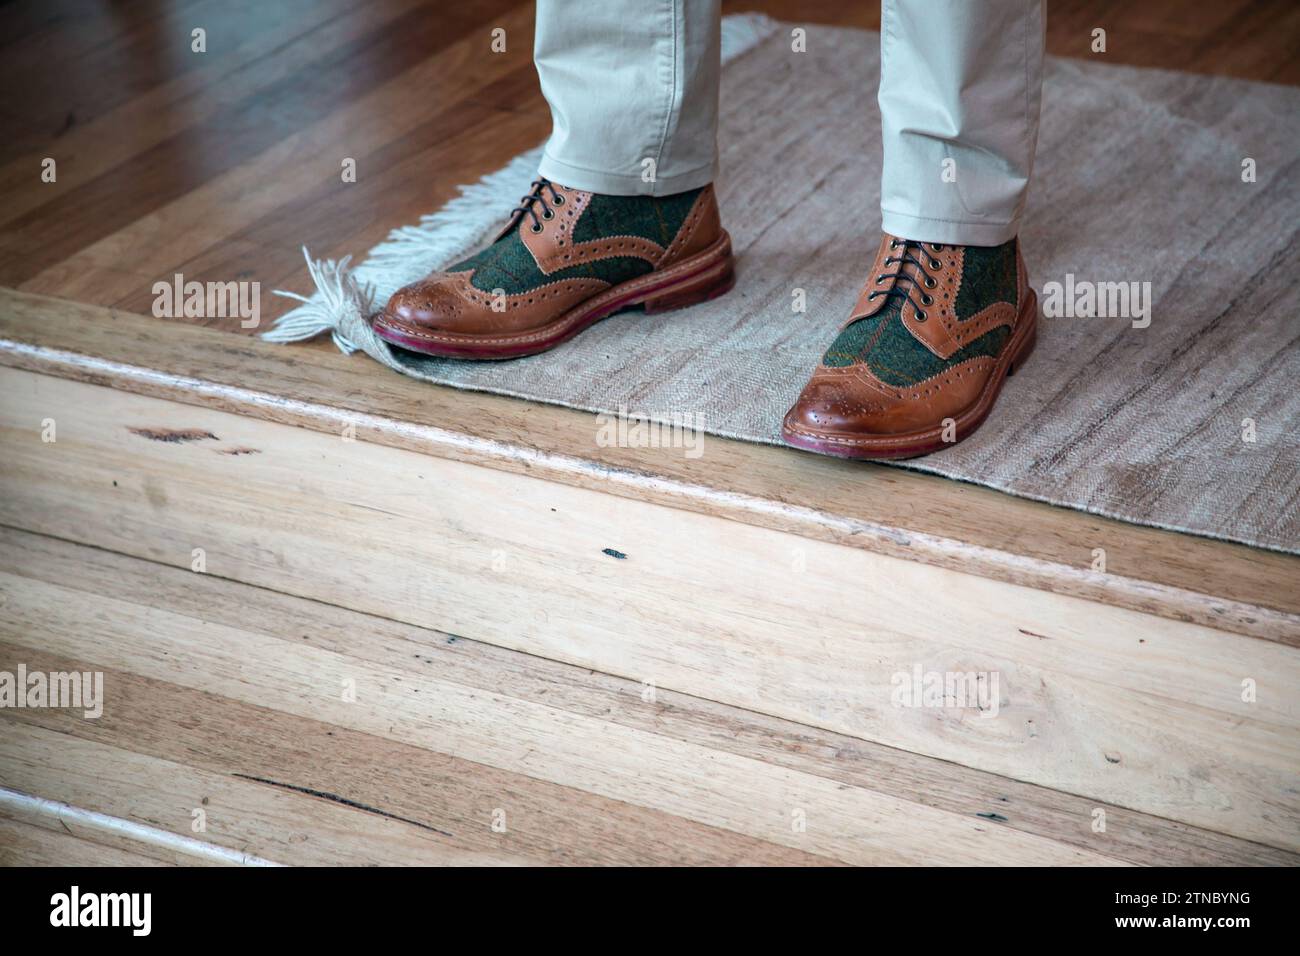 Un uomo ben vestito che indossa scarpe di pelle il giorno del suo matrimonio si erge sul tappeto di lana intrecciata sopra le scale di legno mentre attende l'inizio della cerimonia Foto Stock